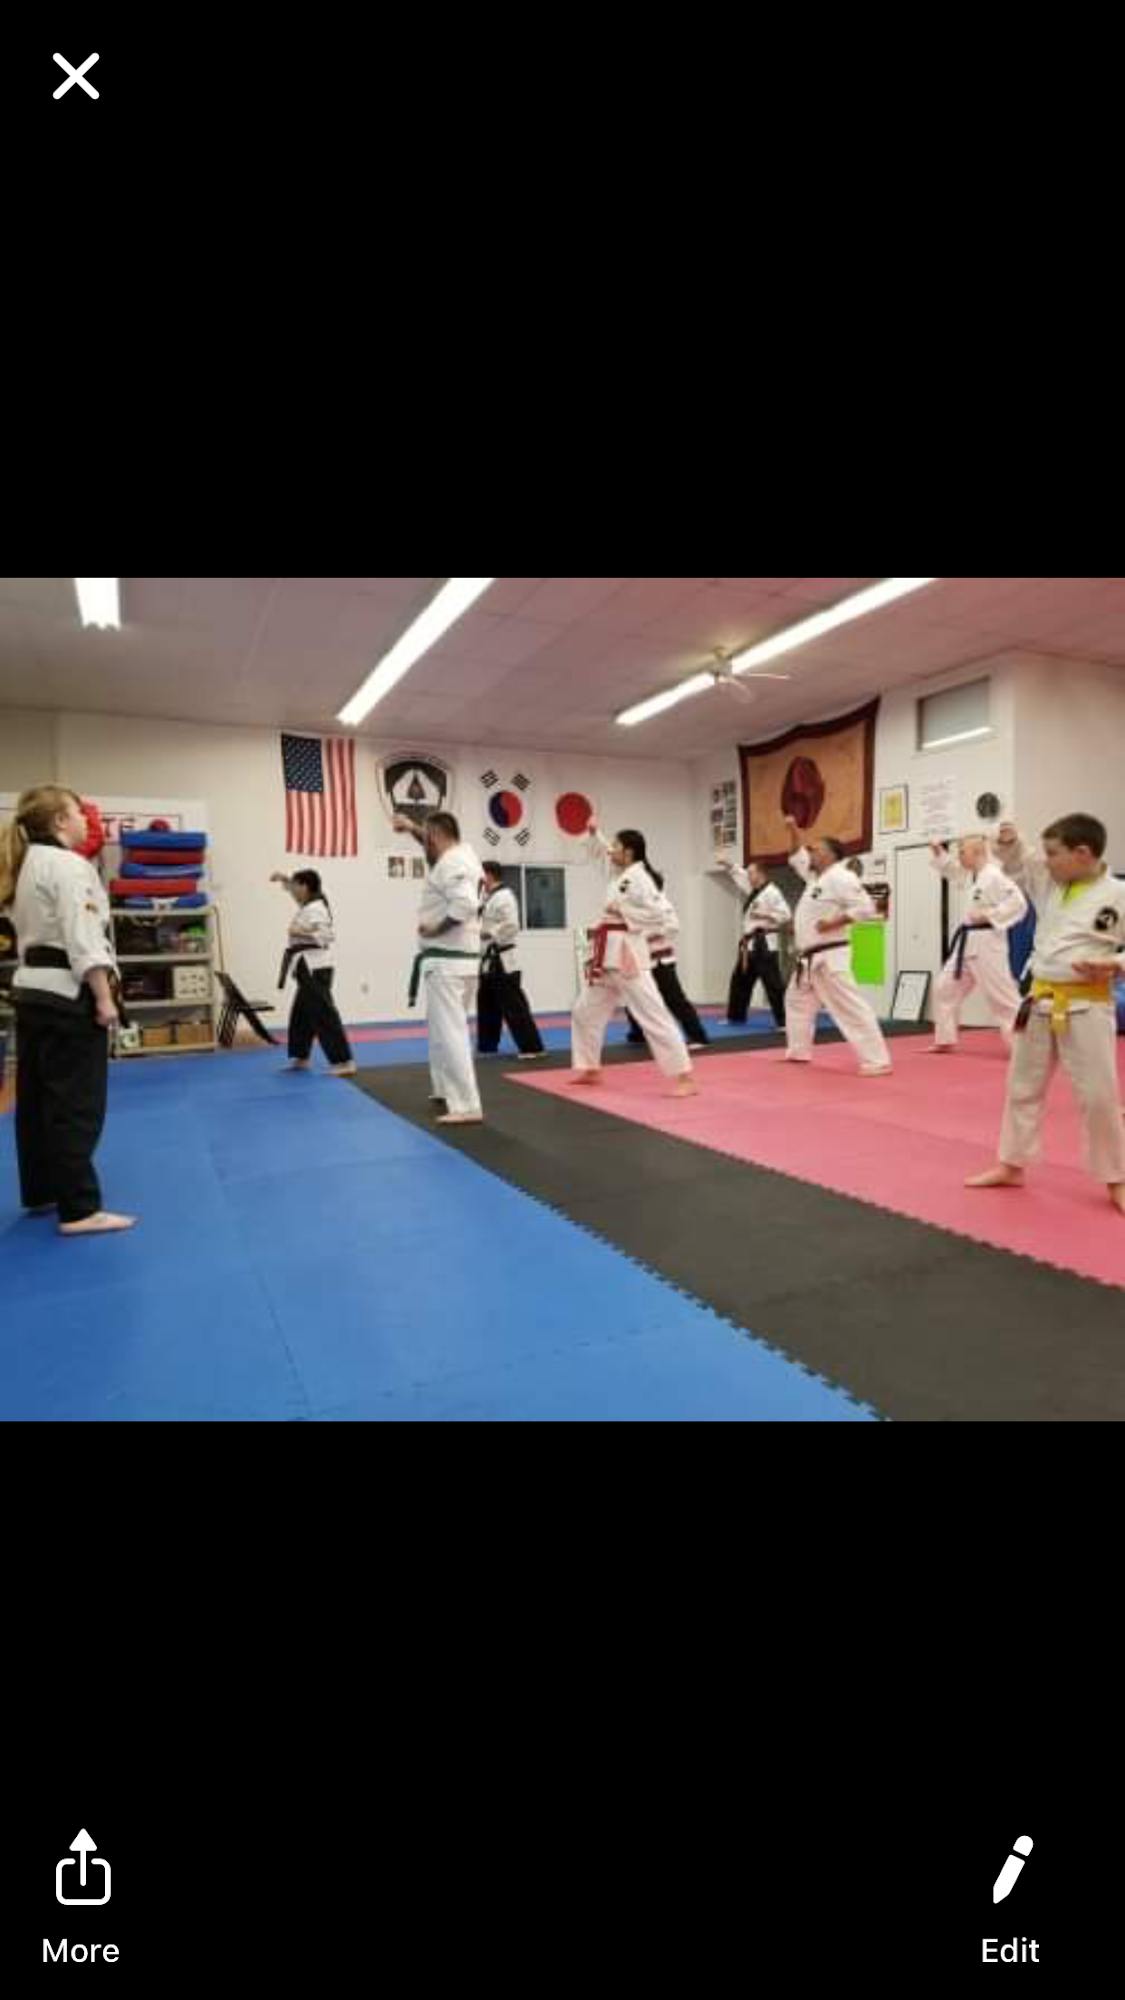 Mountain Karate Academy 468 Delaware Ave, Palmerton Pennsylvania 18071